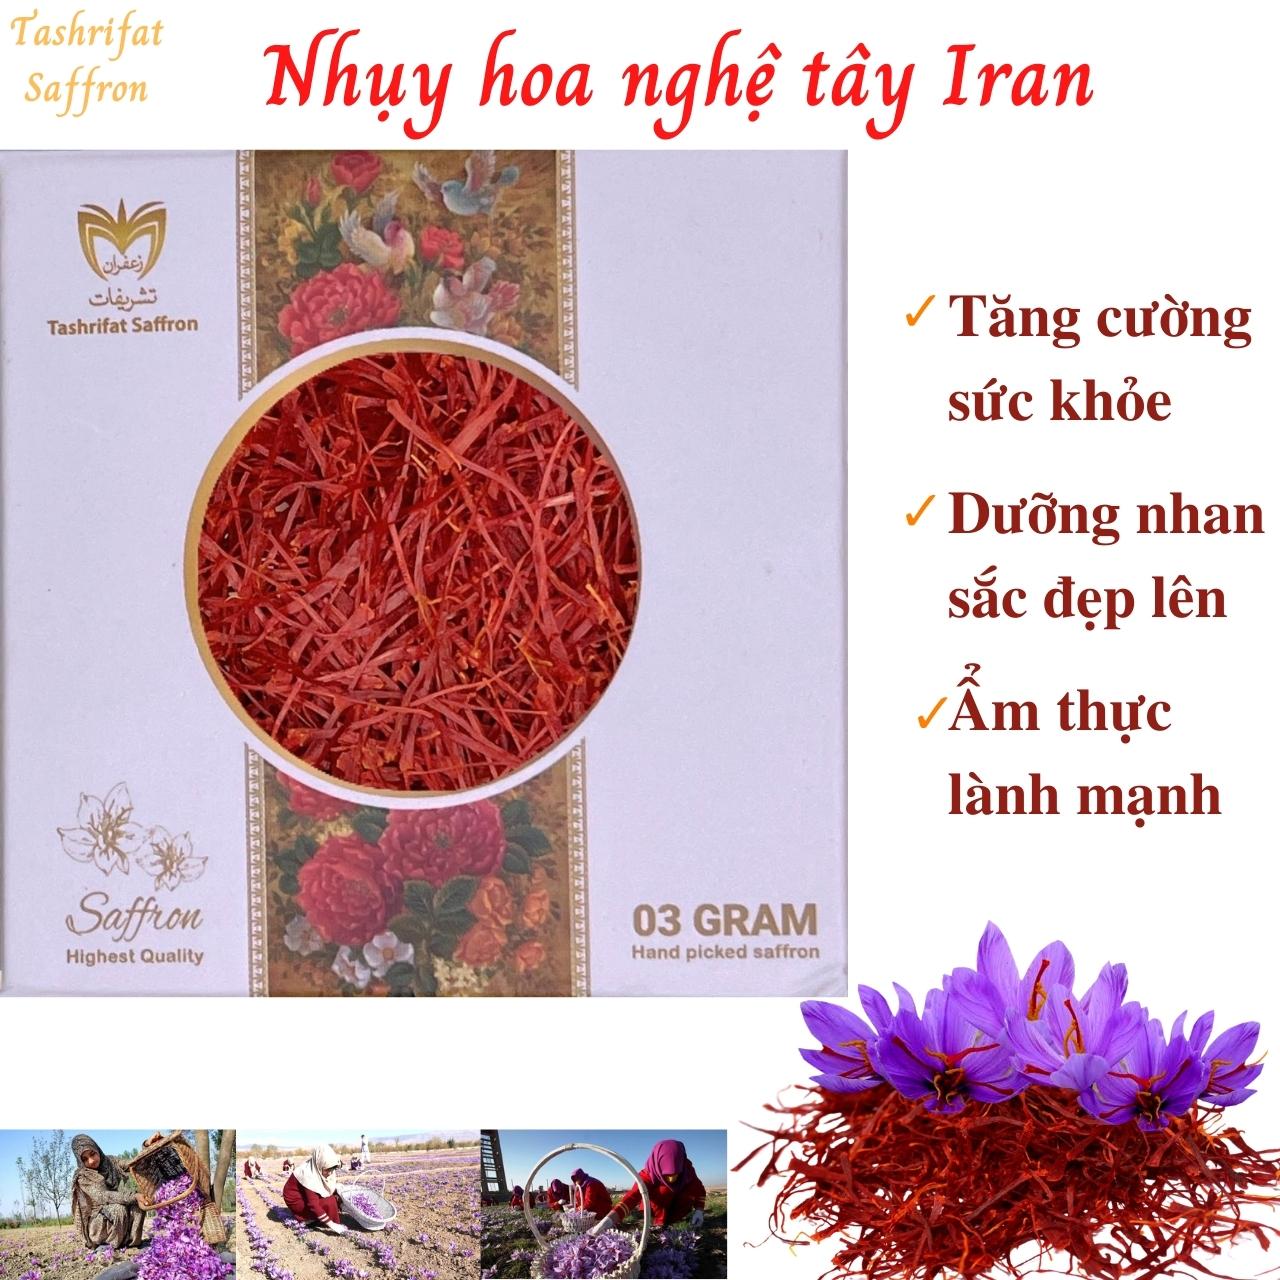 Nhụy hoa nghệ tây Iran Tashrifat Saffron